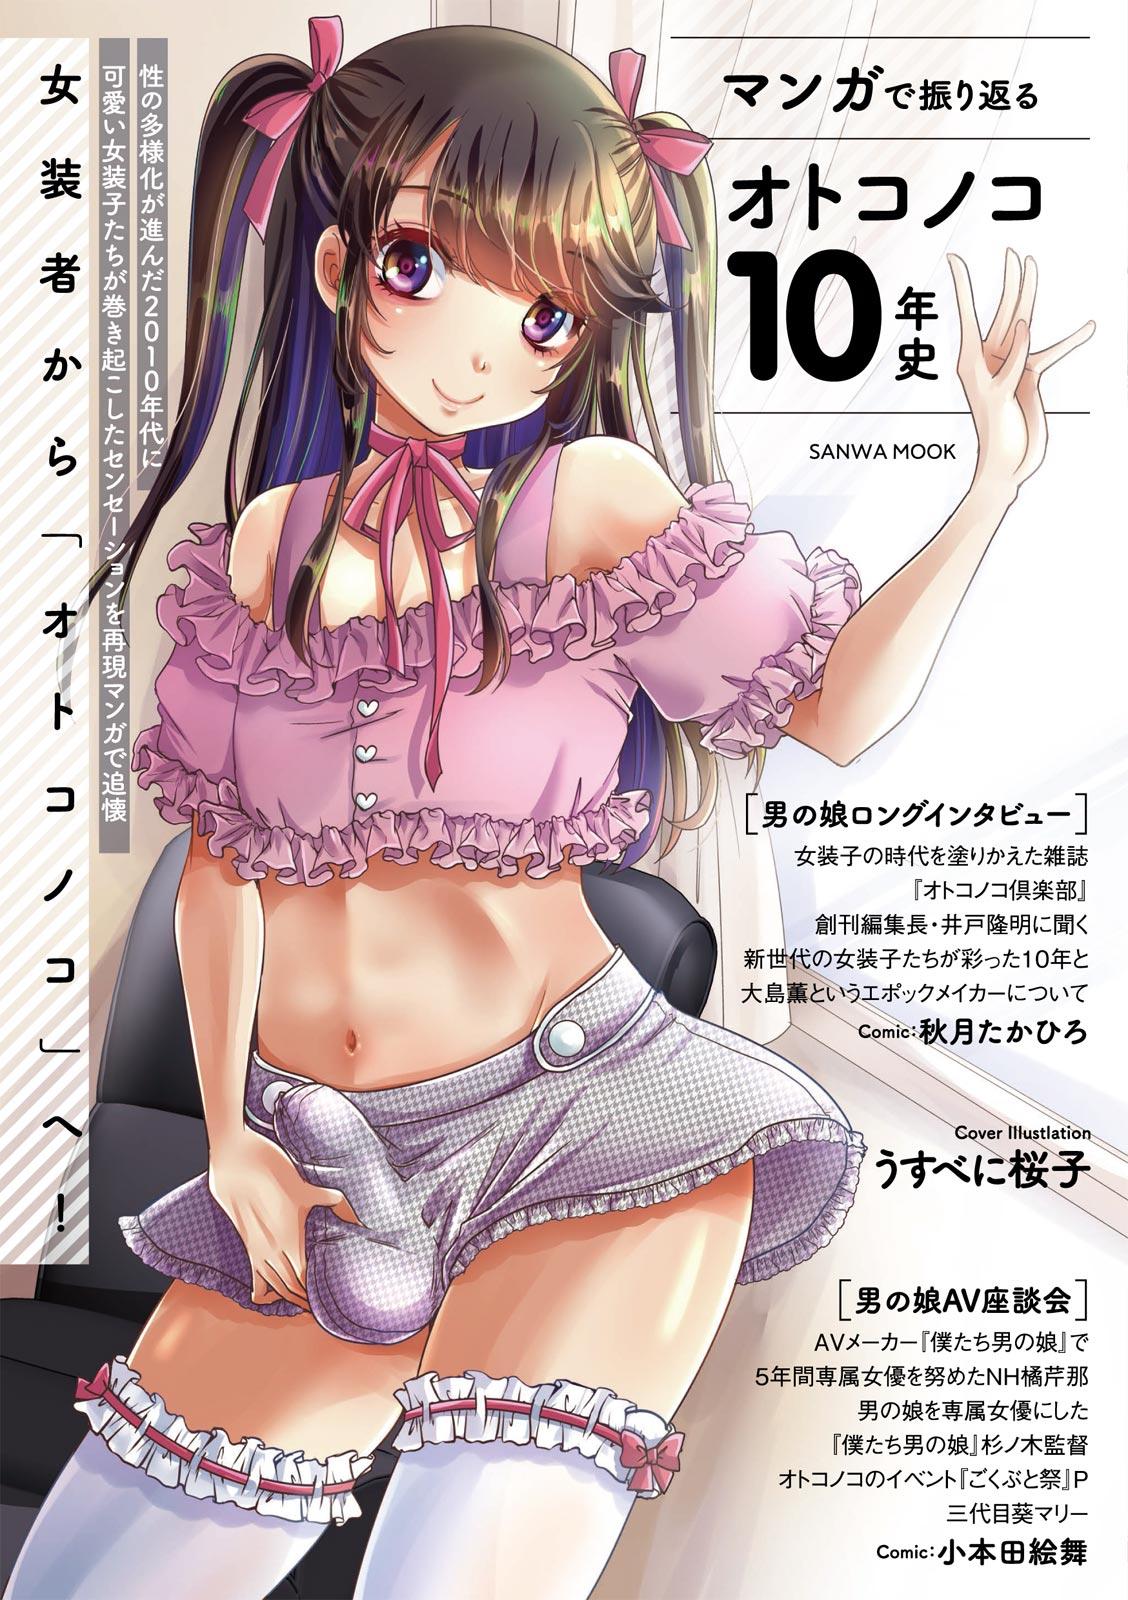 Babe Manga de Furikaeru Otokonoko 10-nenshi Behind - Page 1